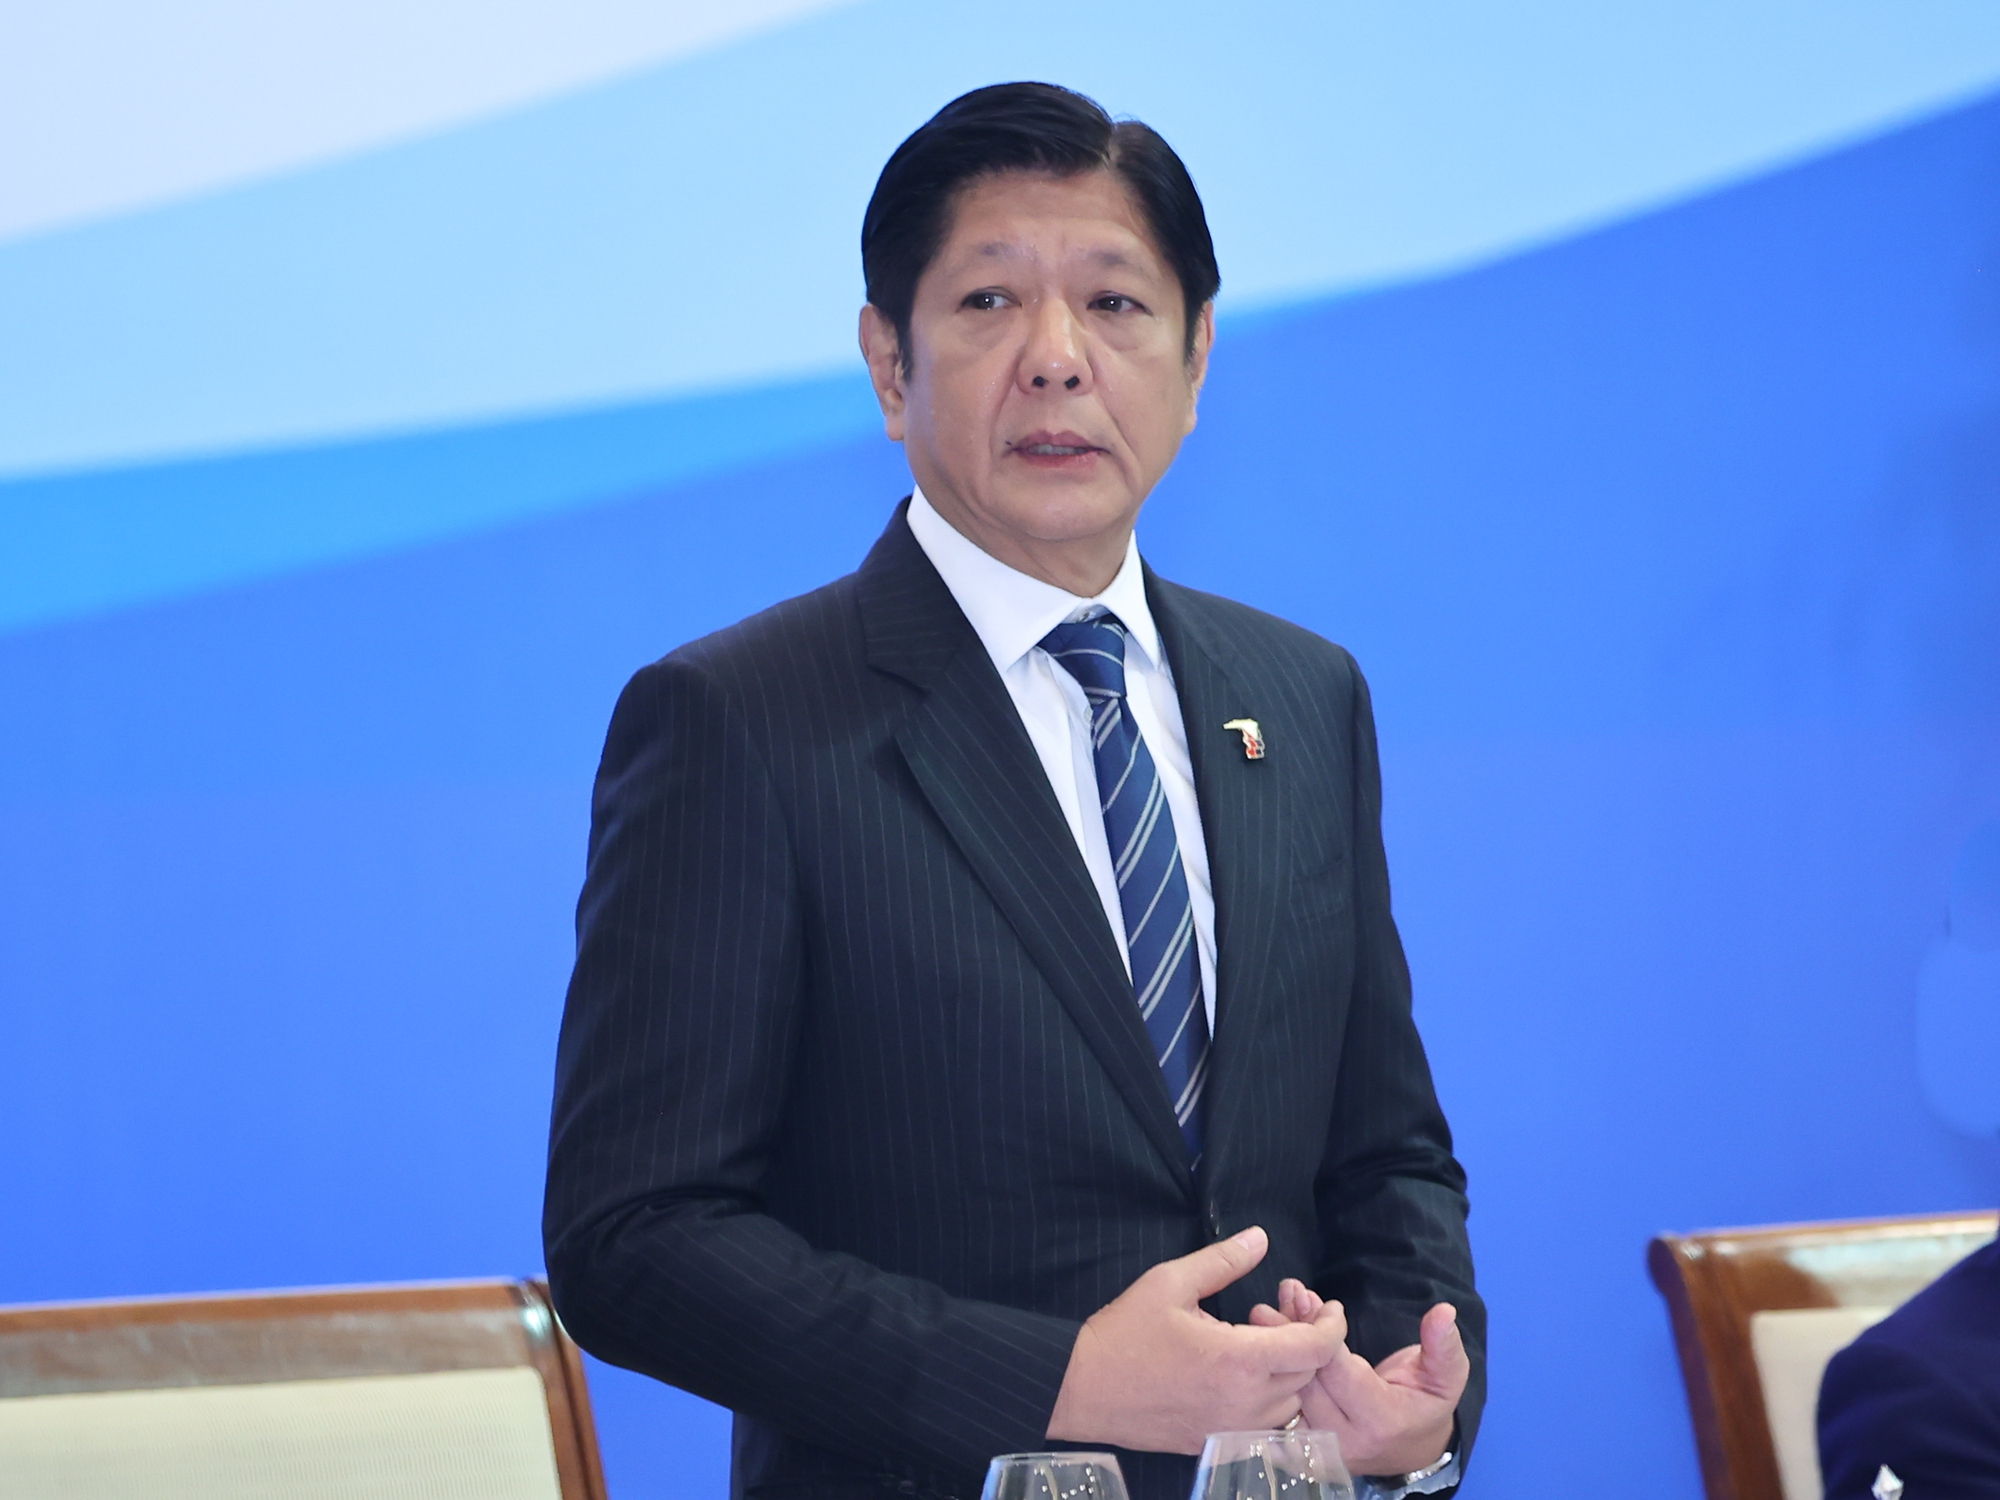 Tổng thống Philippines Ferdinand Romualdez Marcos Jr. đánh giá cao chính sách cởi mở, sự hỗ trợ tích cực của phía Việt Nam với doanh nghiệp hai nước - Ảnh: VGP/Nhật Bắc